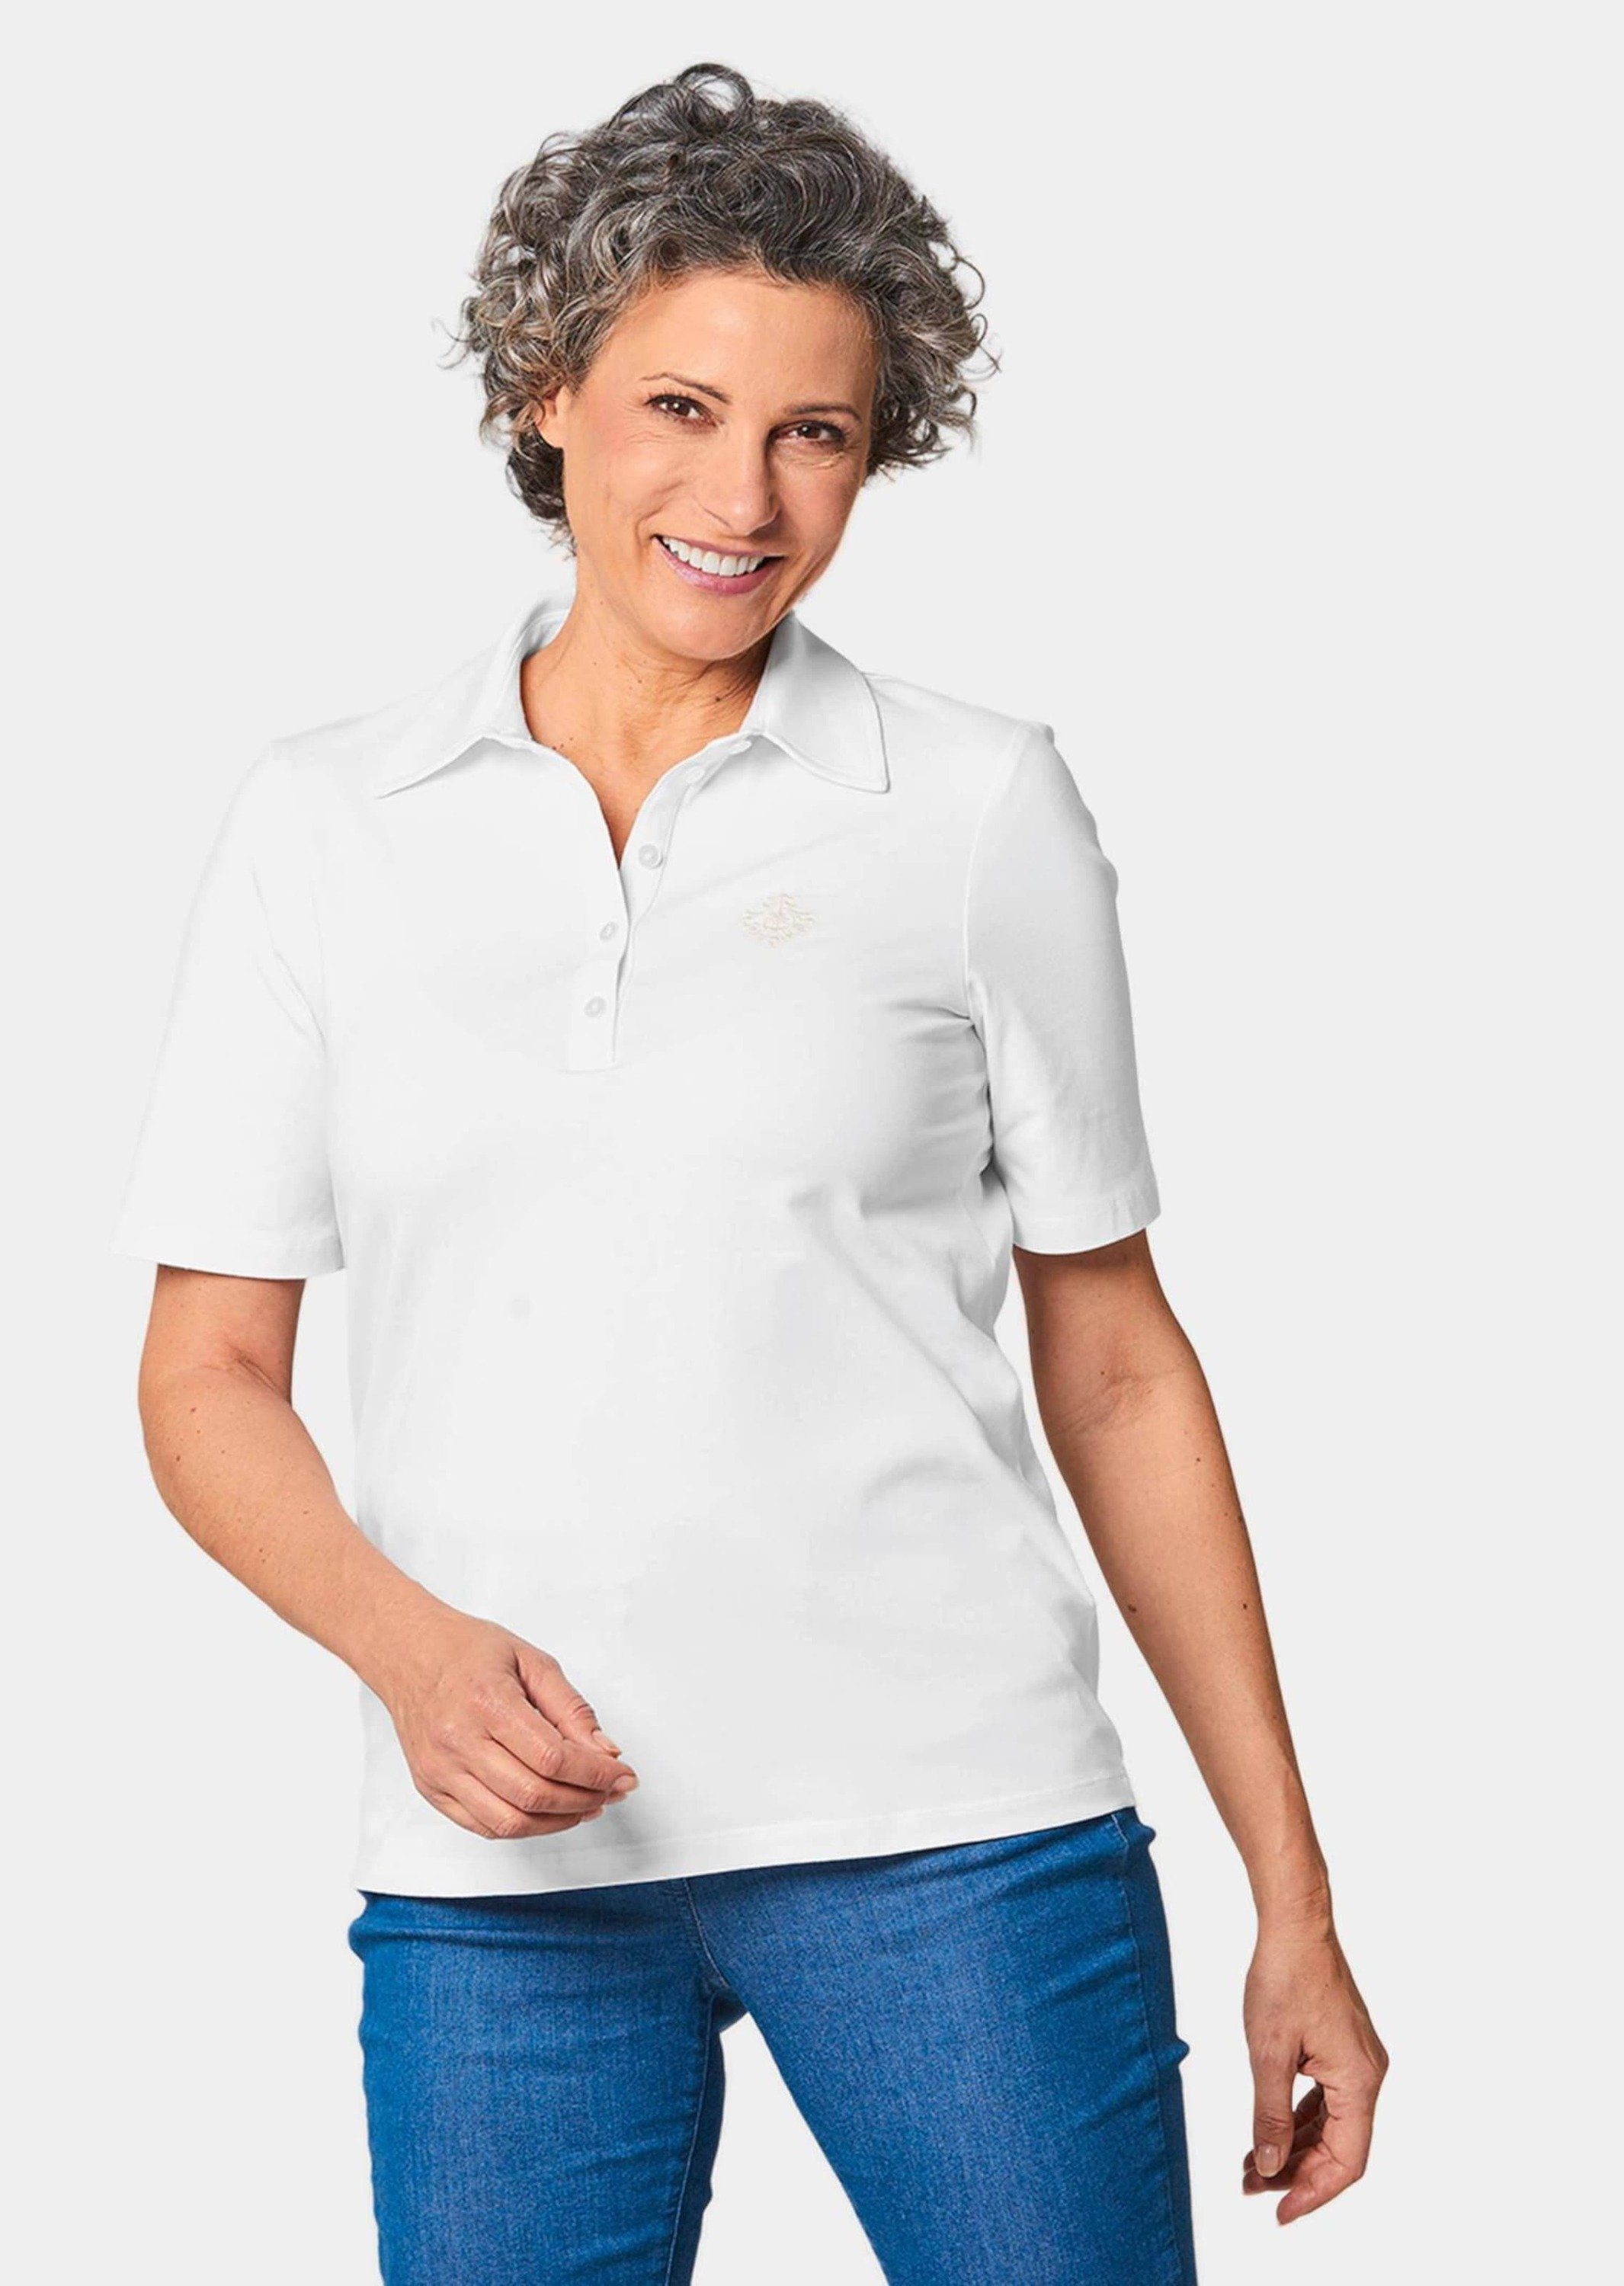 GOLDNER Poloshirt Kurzgröße: Stretchbequemes Poloshirt weiß